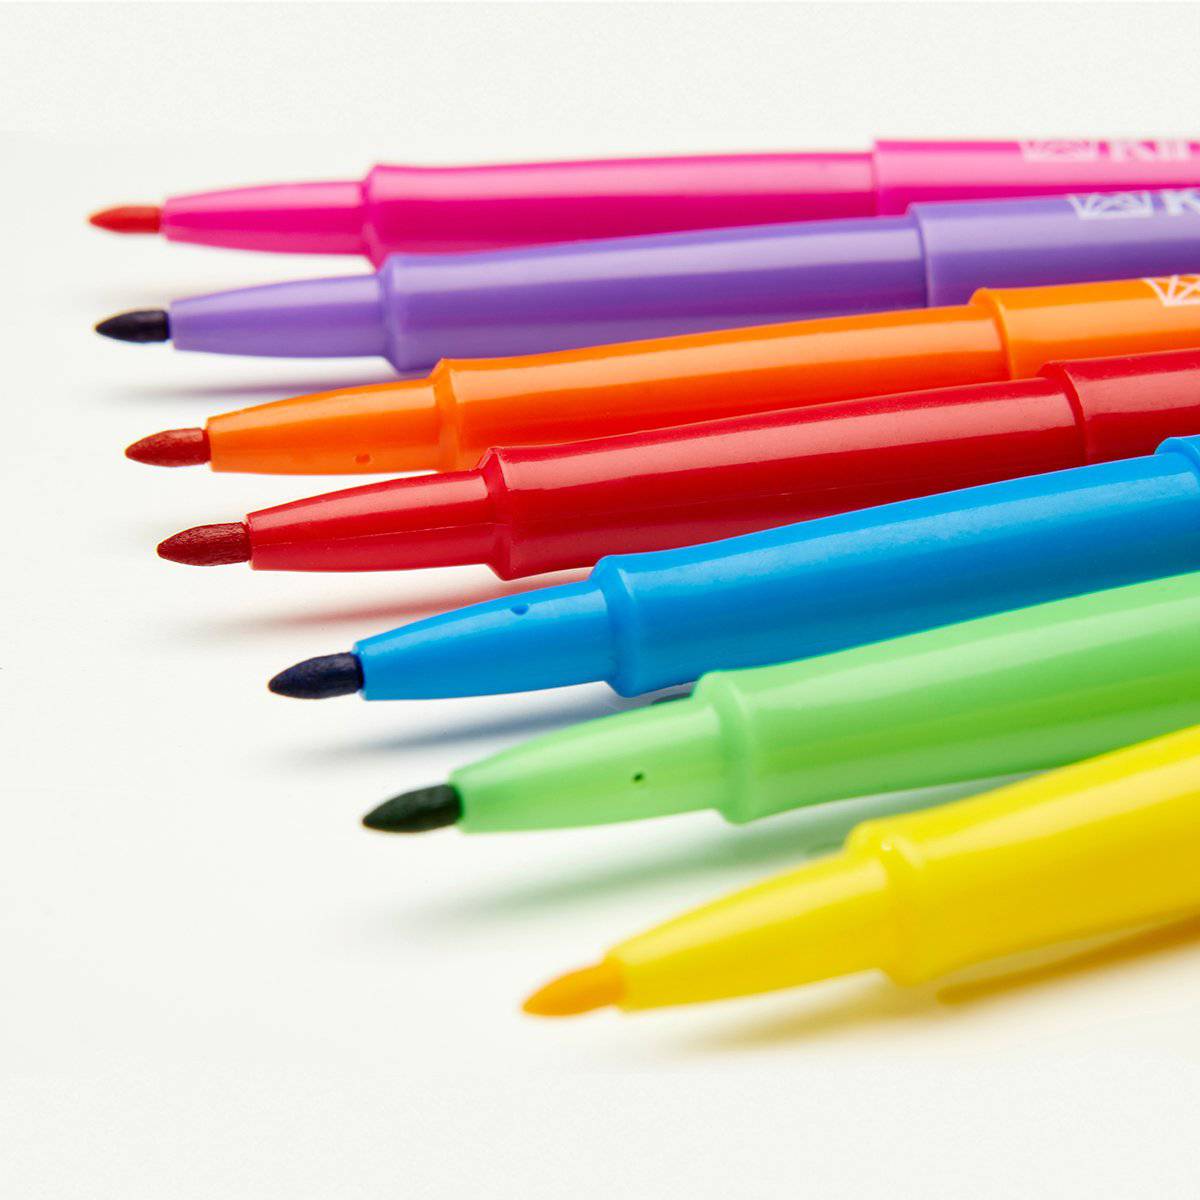 http://www.kingartco.com/cdn/shop/products/kingart-studio-kingart-studio-felt-tip-pens-medium-point-set-24-unique-bright-colors-30196973469857_1200x1200.jpg?v=1640288610